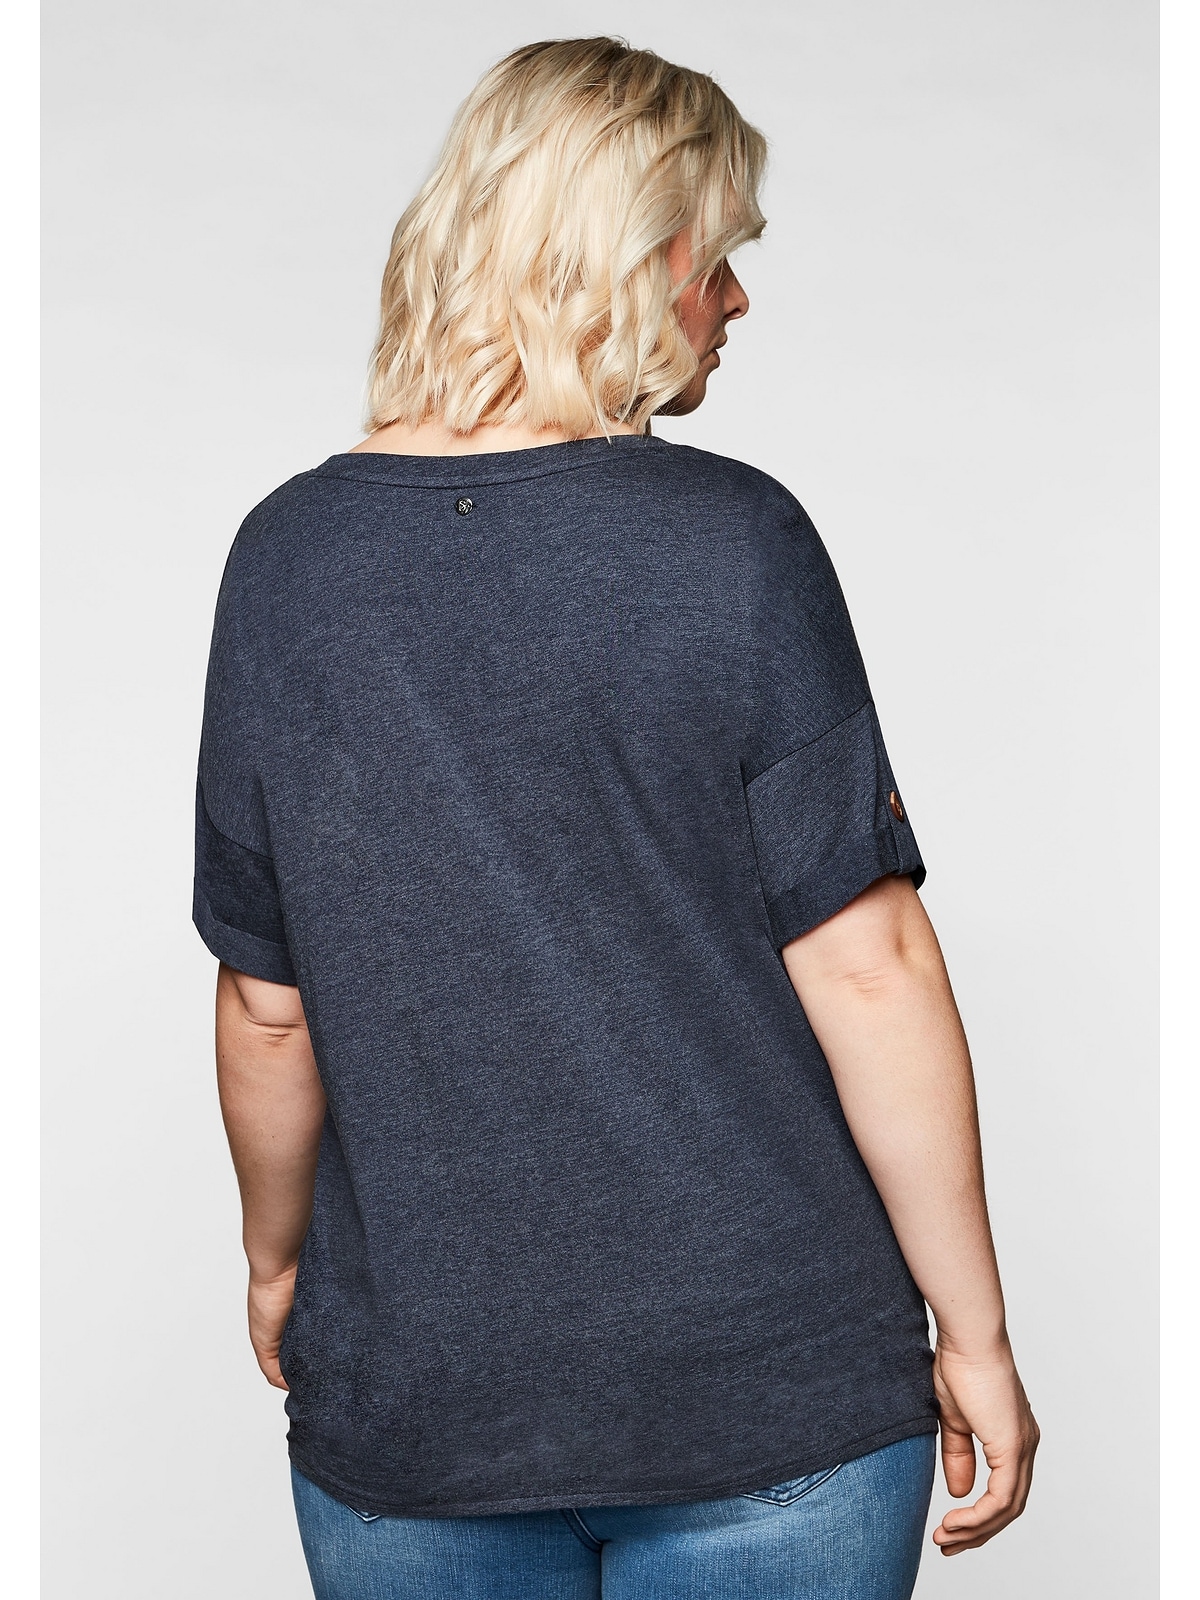 Sheego T-Shirt bestellen am Saum Größen«, und »Große Ziernaht Knotendetail mit